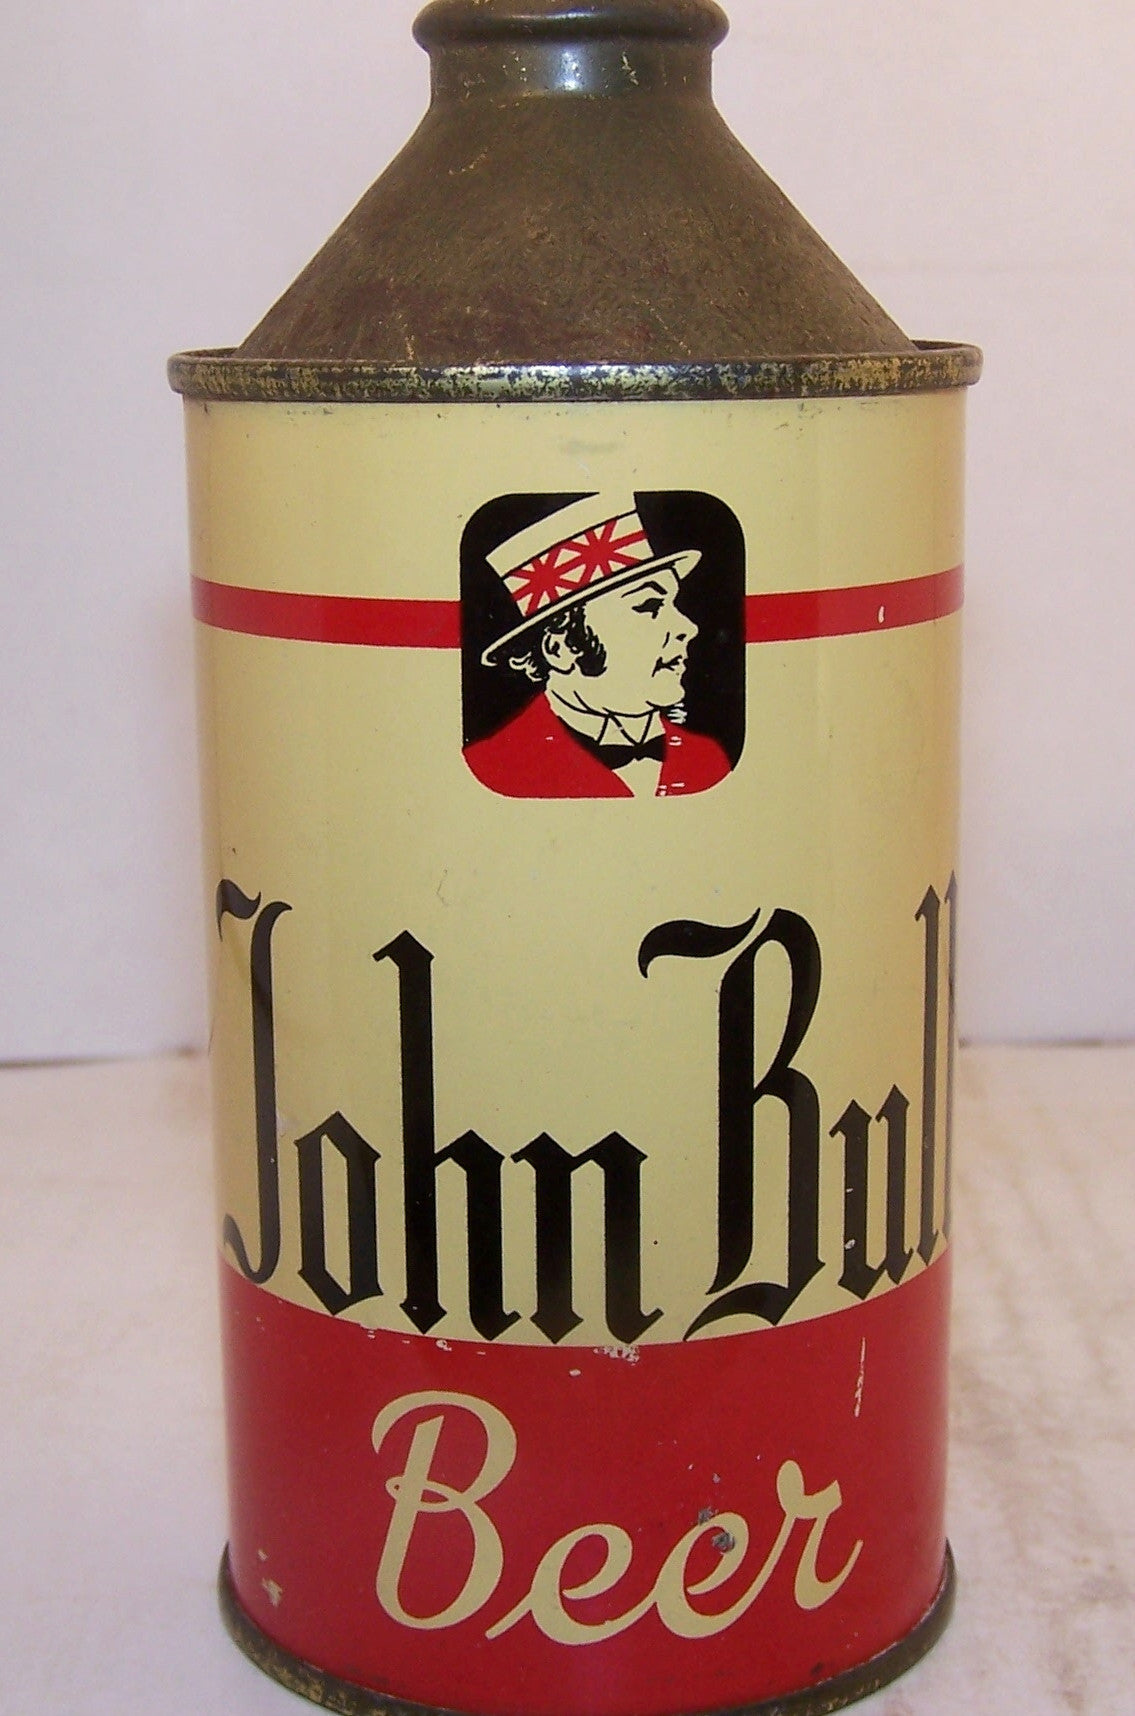 John Bull Beer, USBC 170-17, Grade 1 Sold 12/9/14. Trending Down